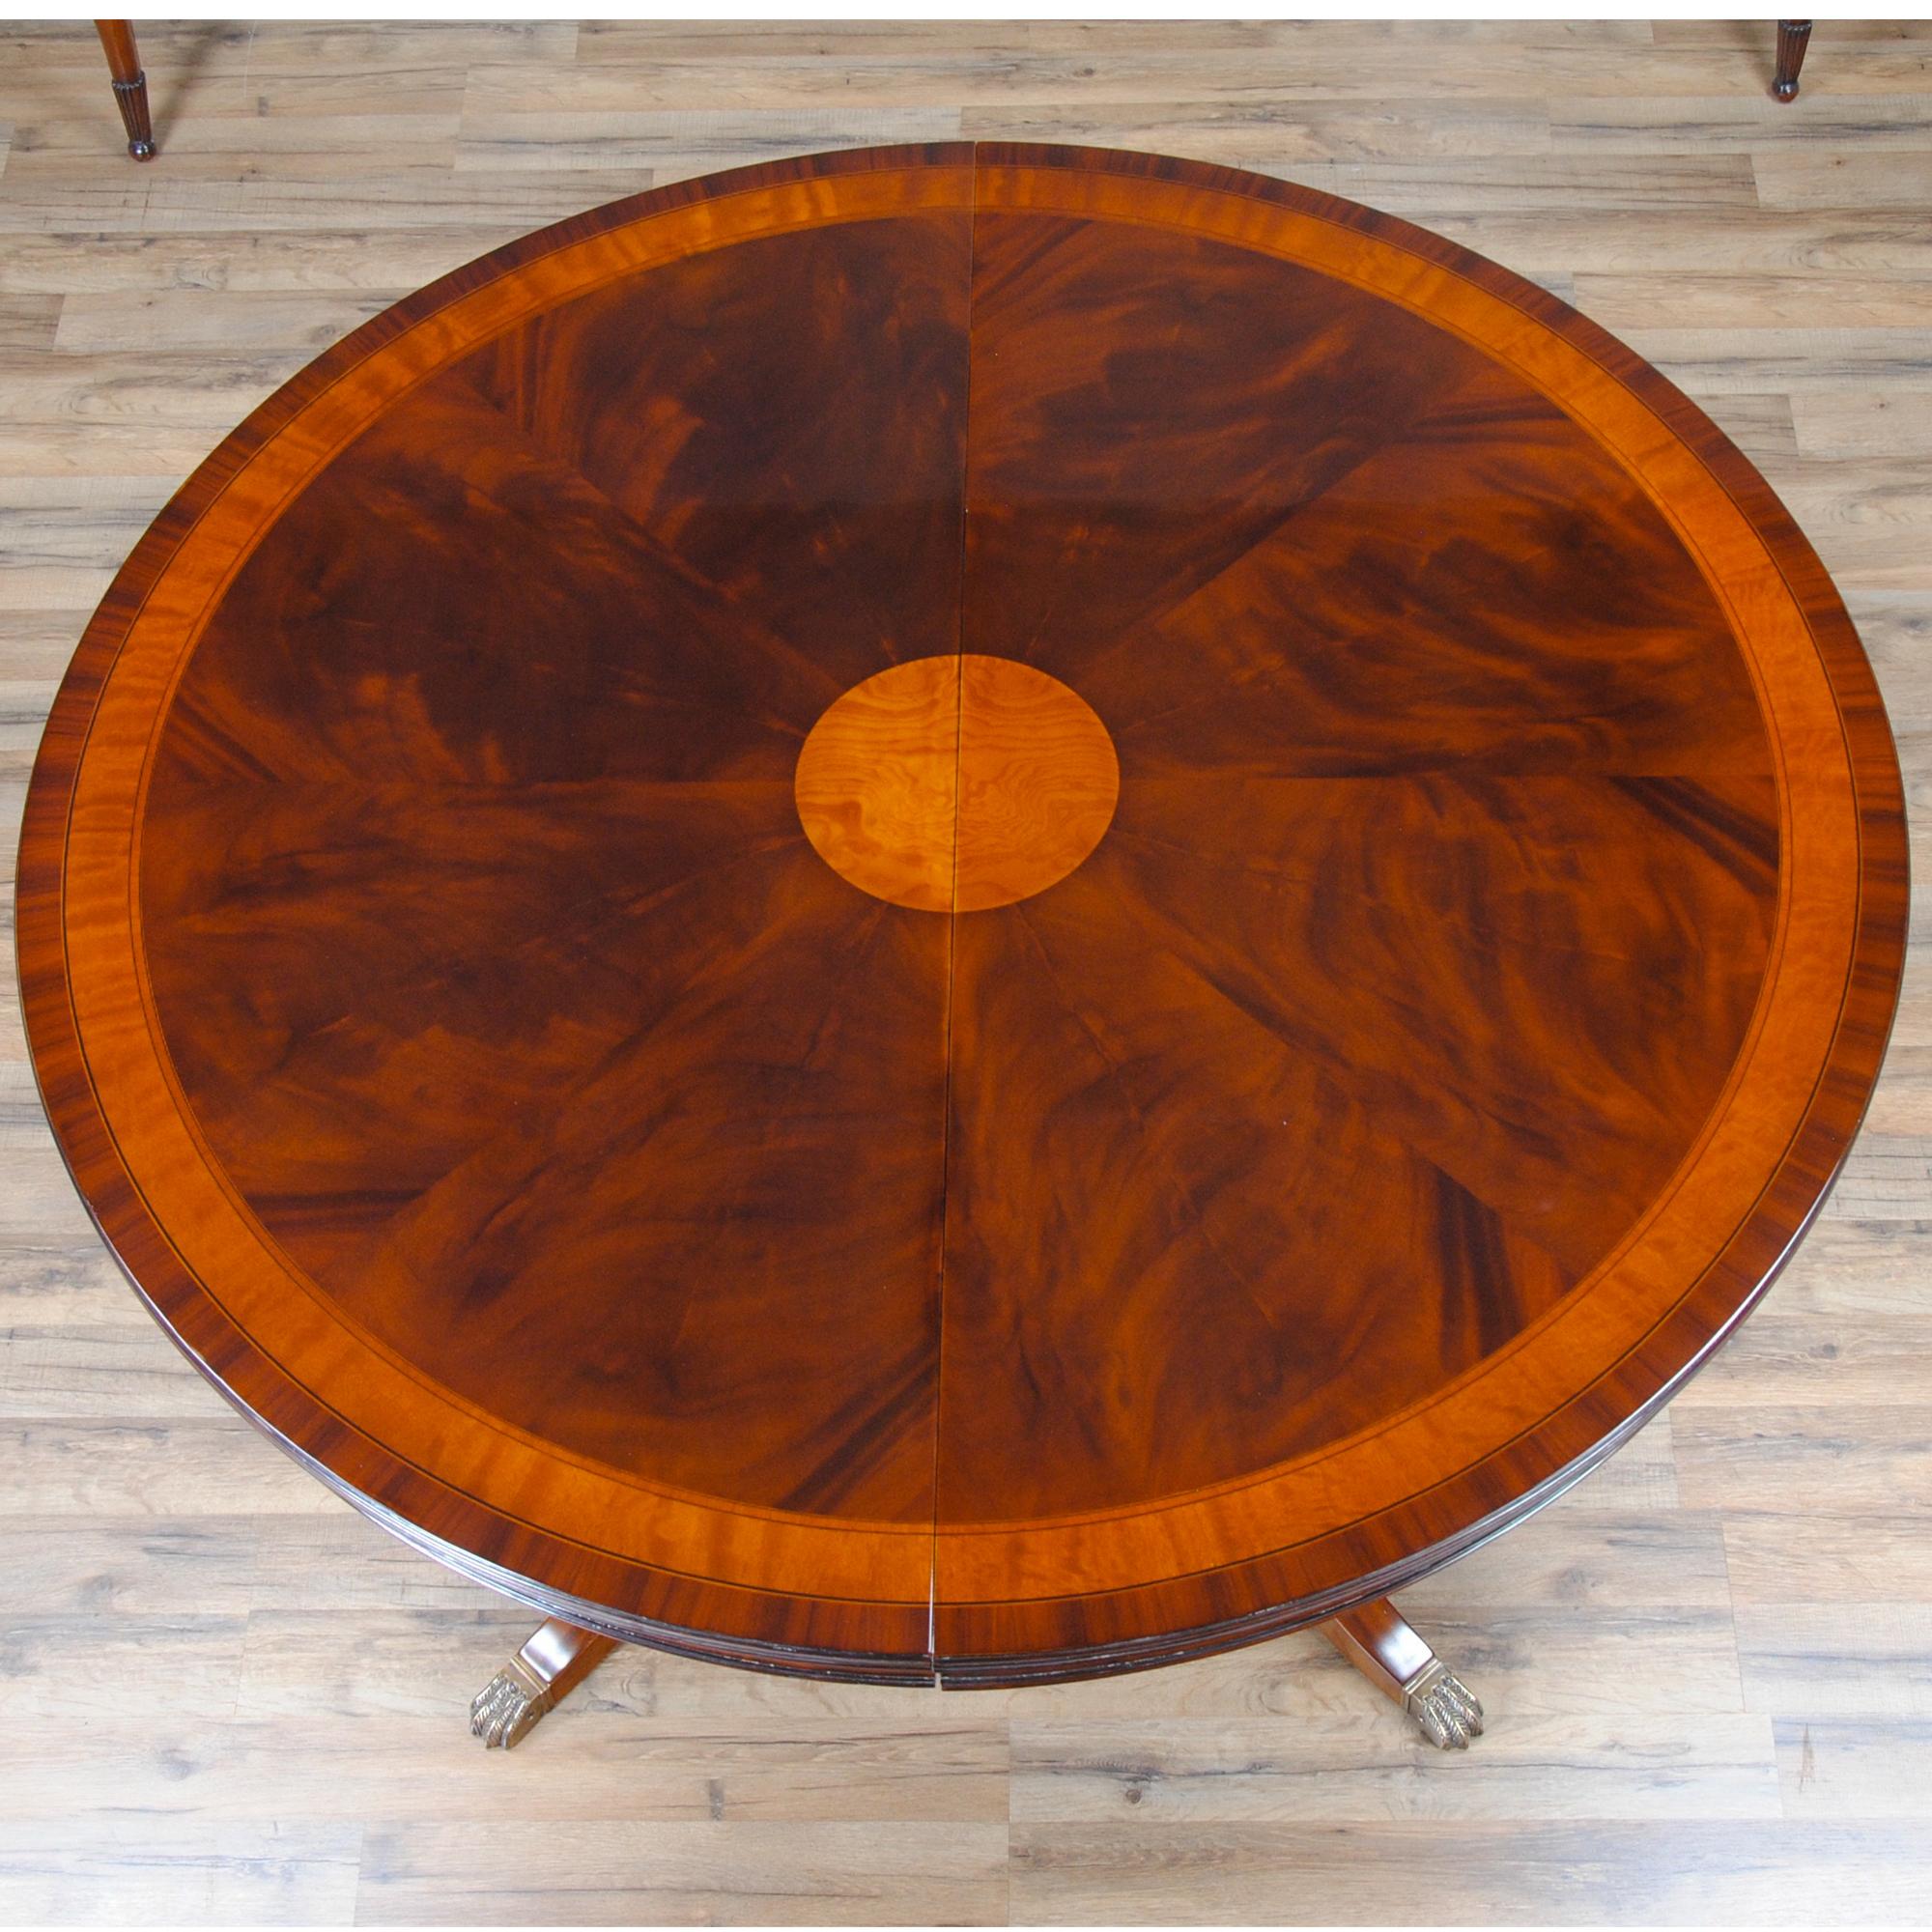 Une version populaire de la table ronde 54″-90″ en acajou. Lorsqu'elle est fermée, la table mesure 54″ de diamètre, ce qui la rend idéale pour les petits dîners en tête-à-tête. Lorsque les deux battants sont mis en place, la table s'ouvre sur une